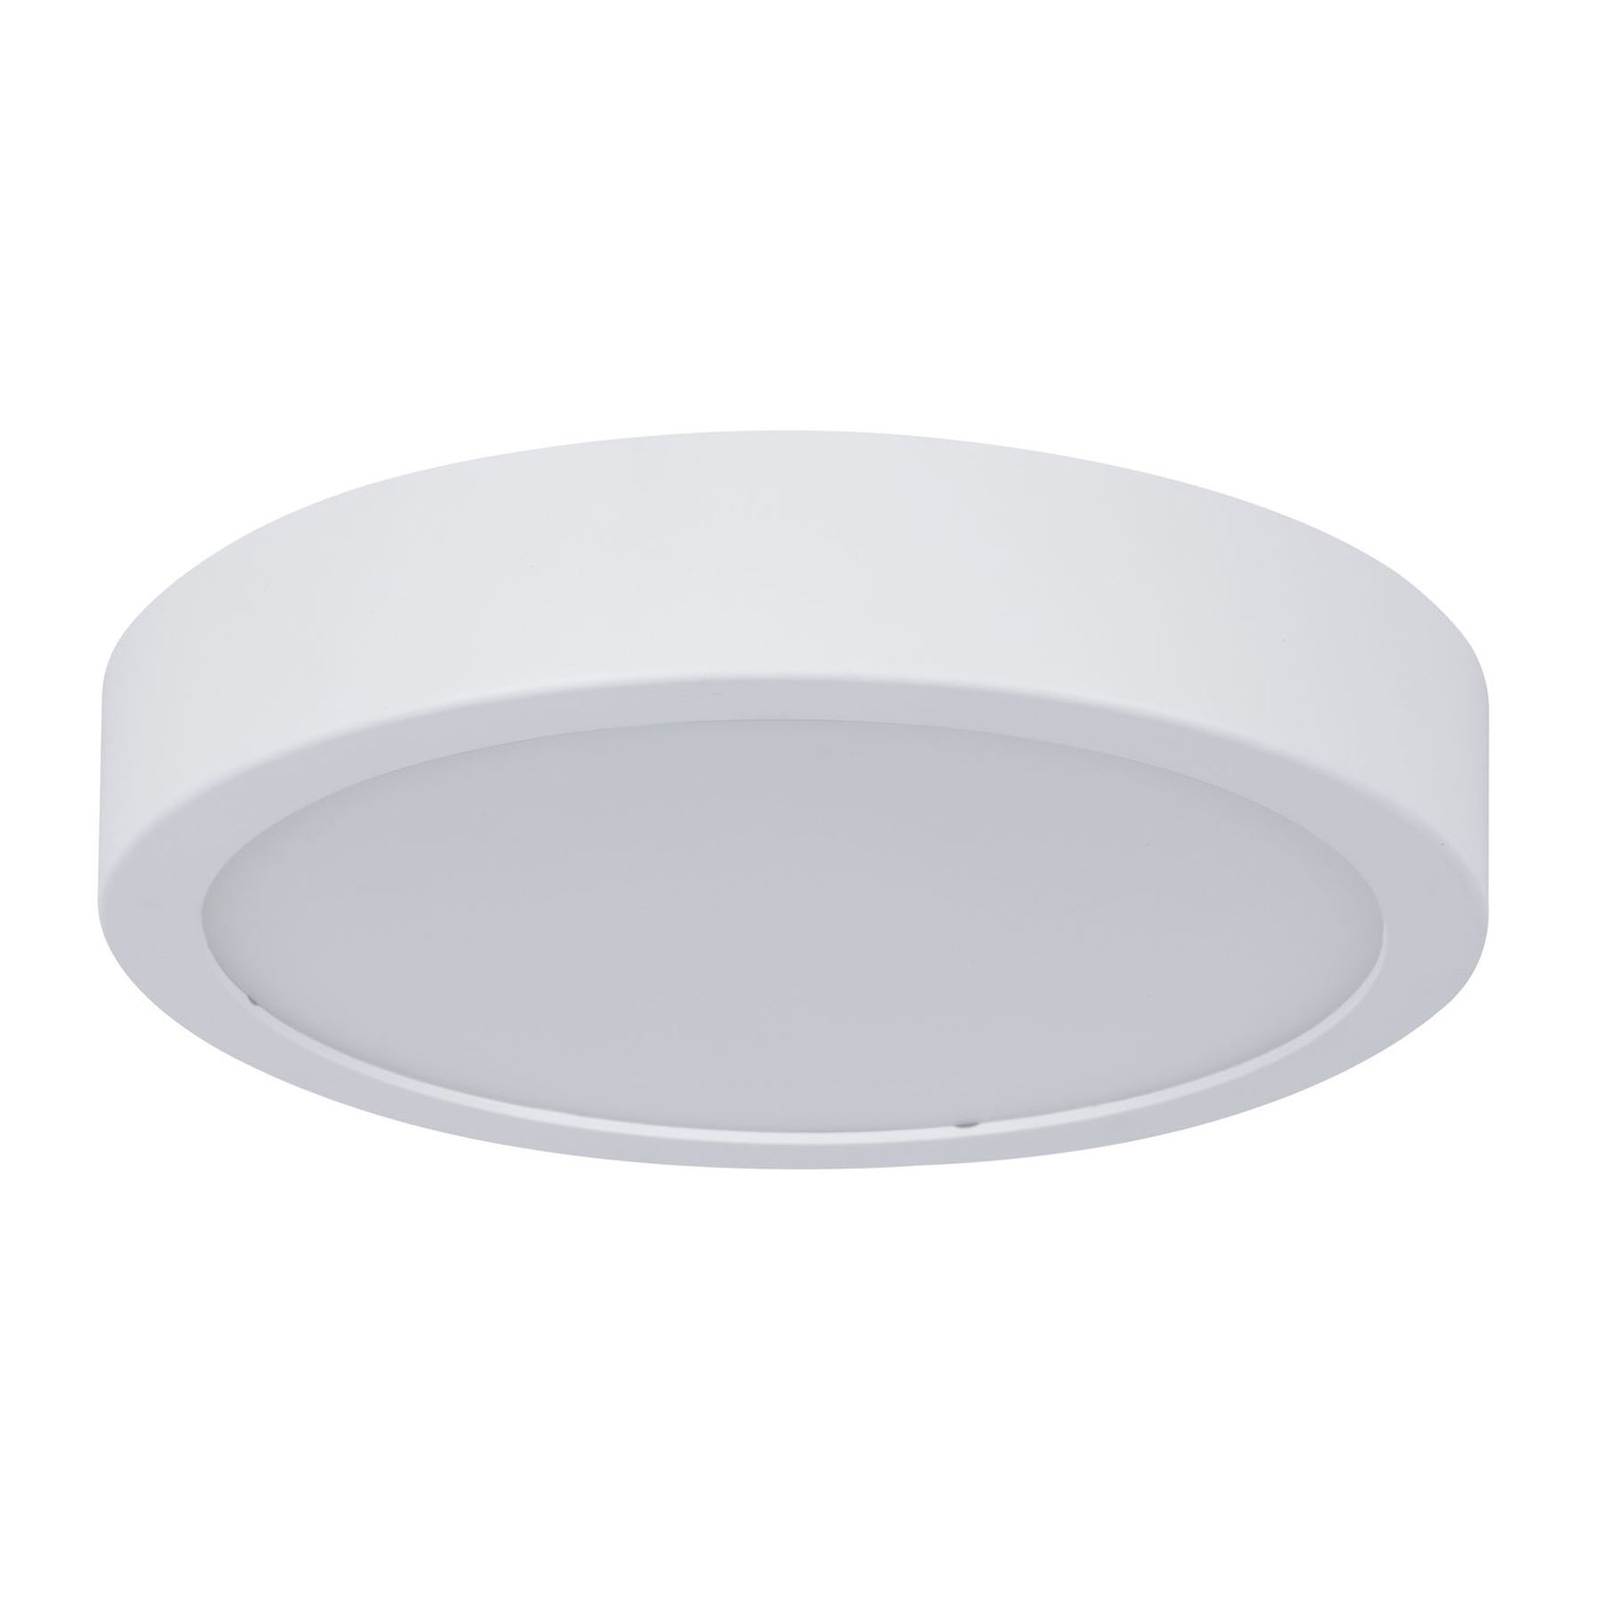 Paulmann Aviar LED ceiling lamp Ø 22cm white 3000K